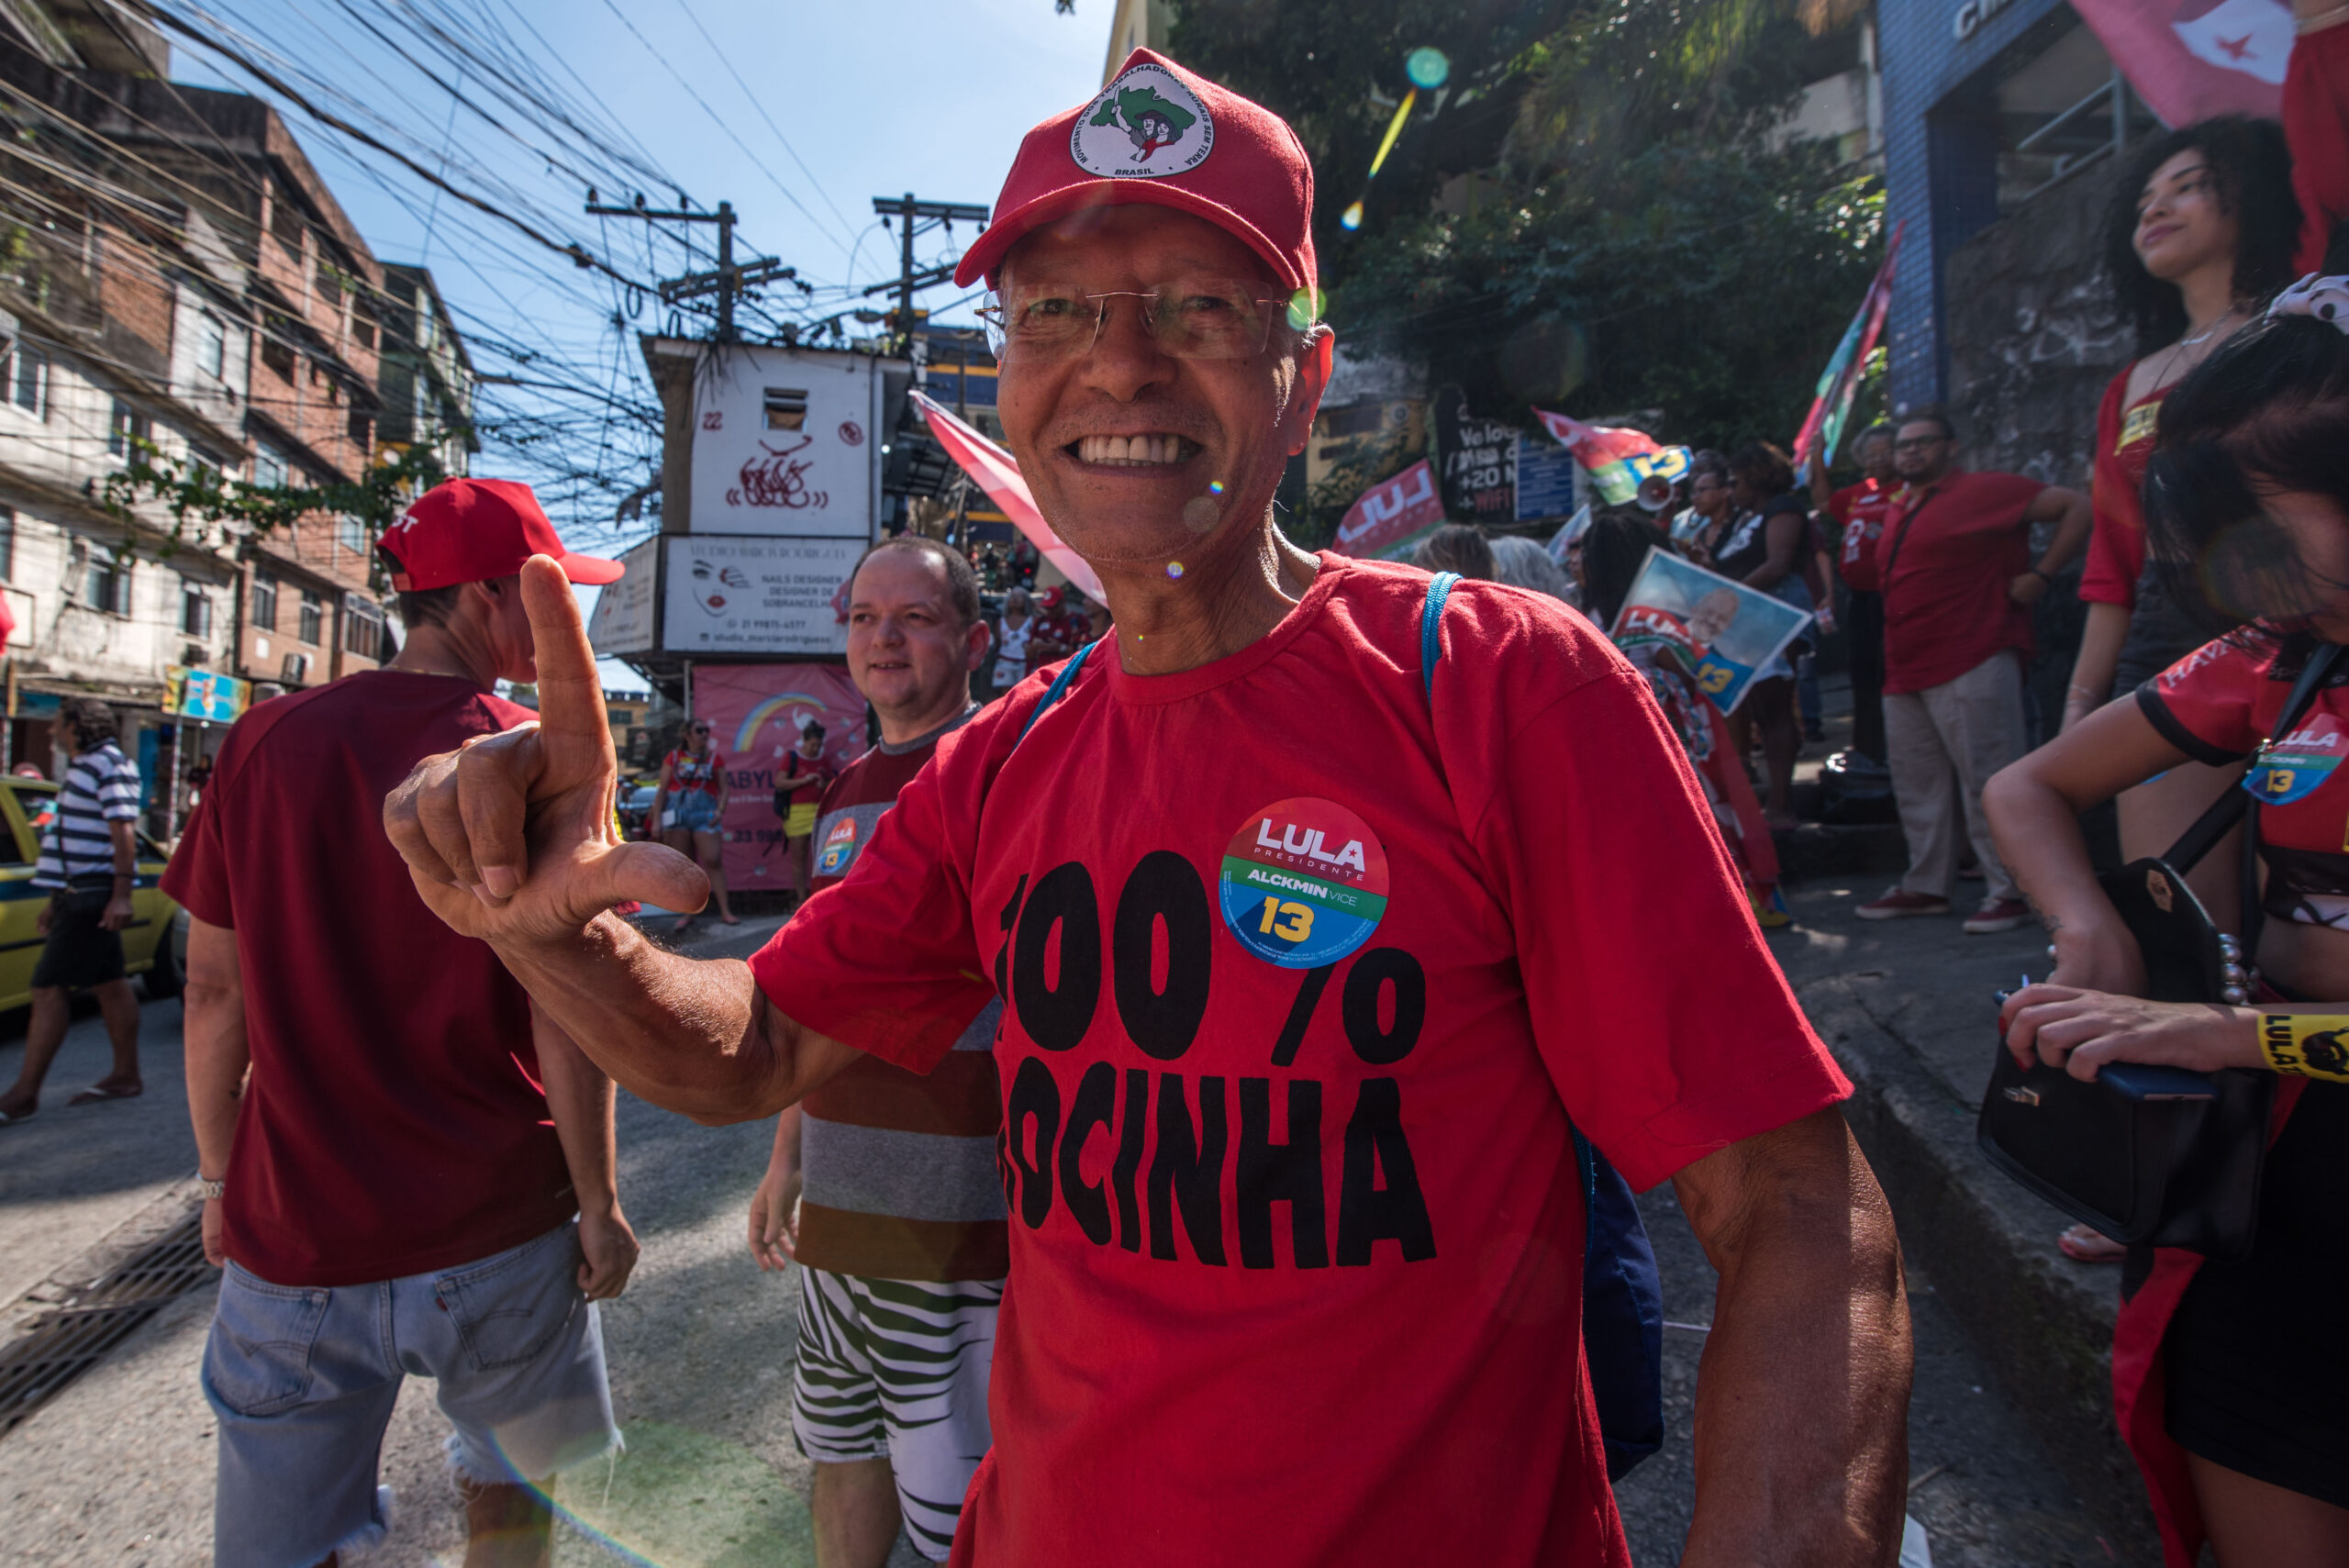 Xaolin da Rocinha, uma das lideranças comunitárias que organizou a caminhada em apoio a Lula, na Rocinha. Foto: Bárbara Dias/RioOnWatch